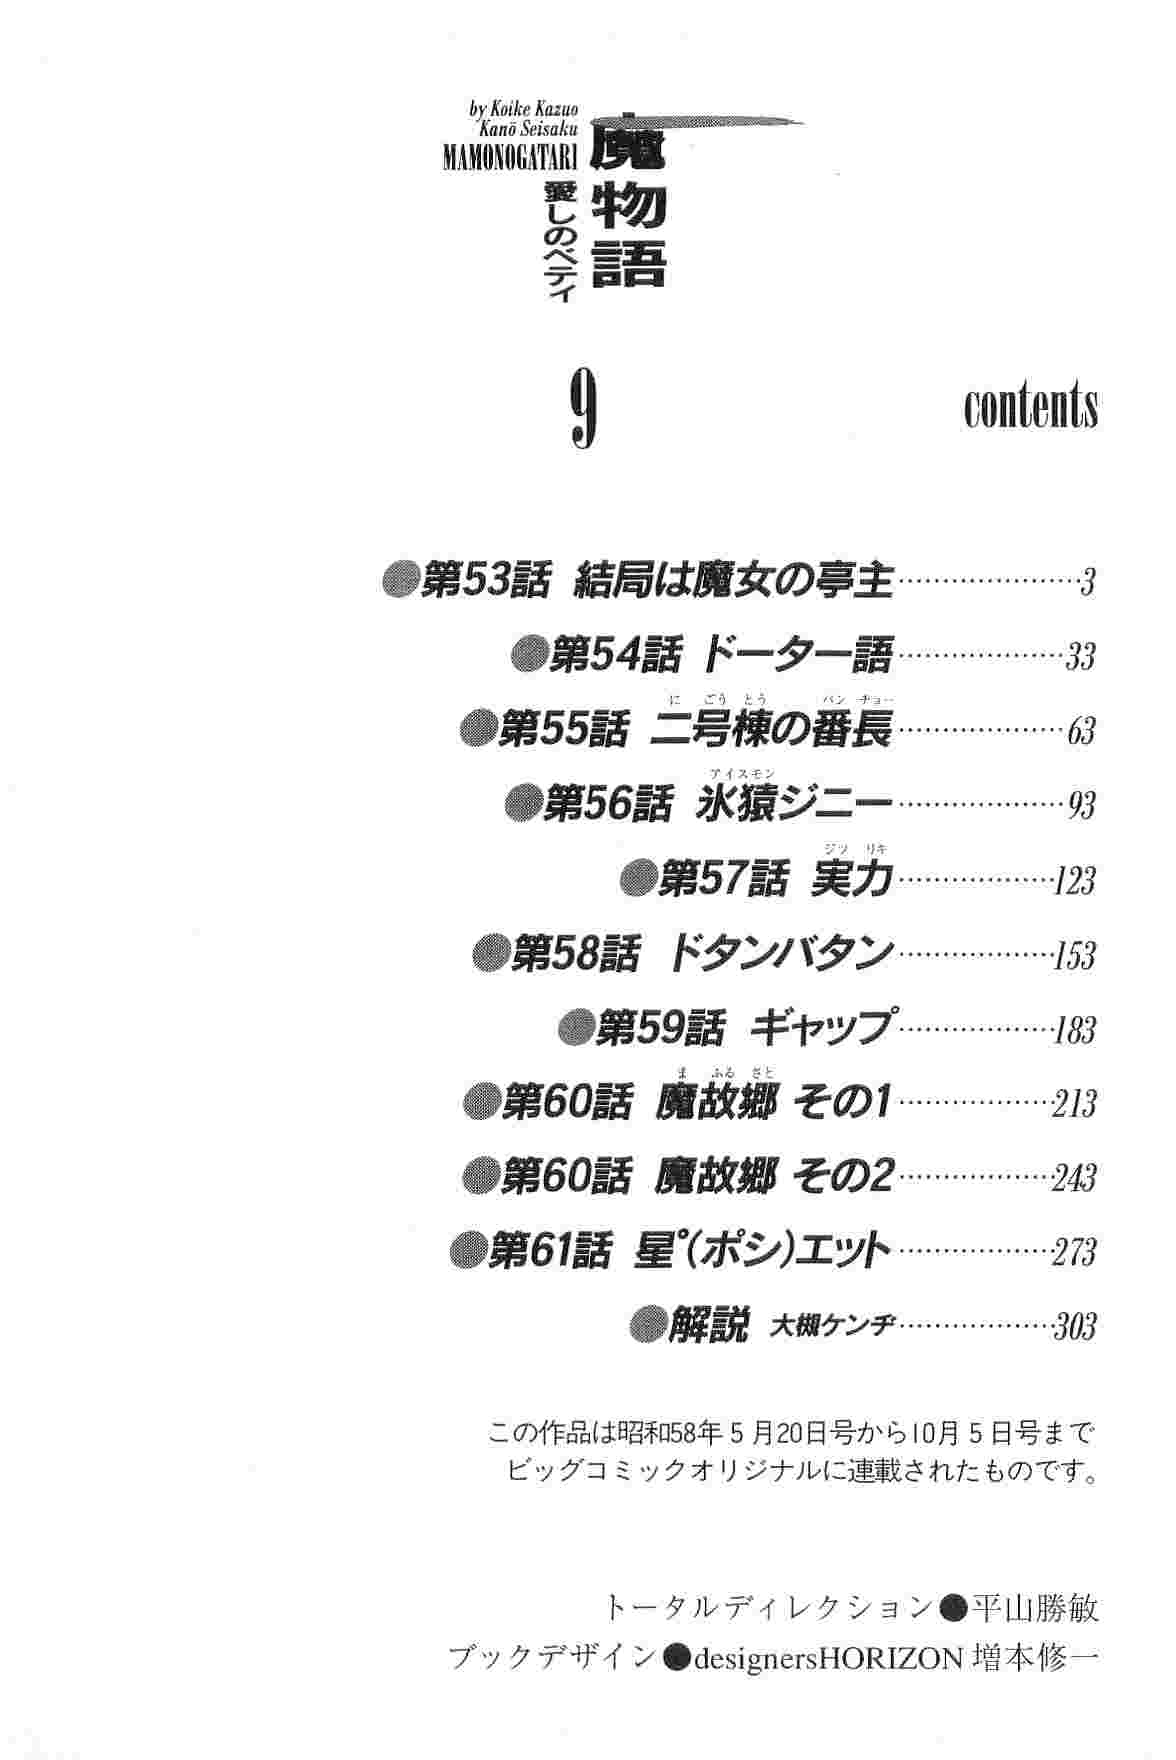 [Koike Kazuo &amp; Kanou Seisaku] Mamonogatari Itoshi no Betty vol.09 